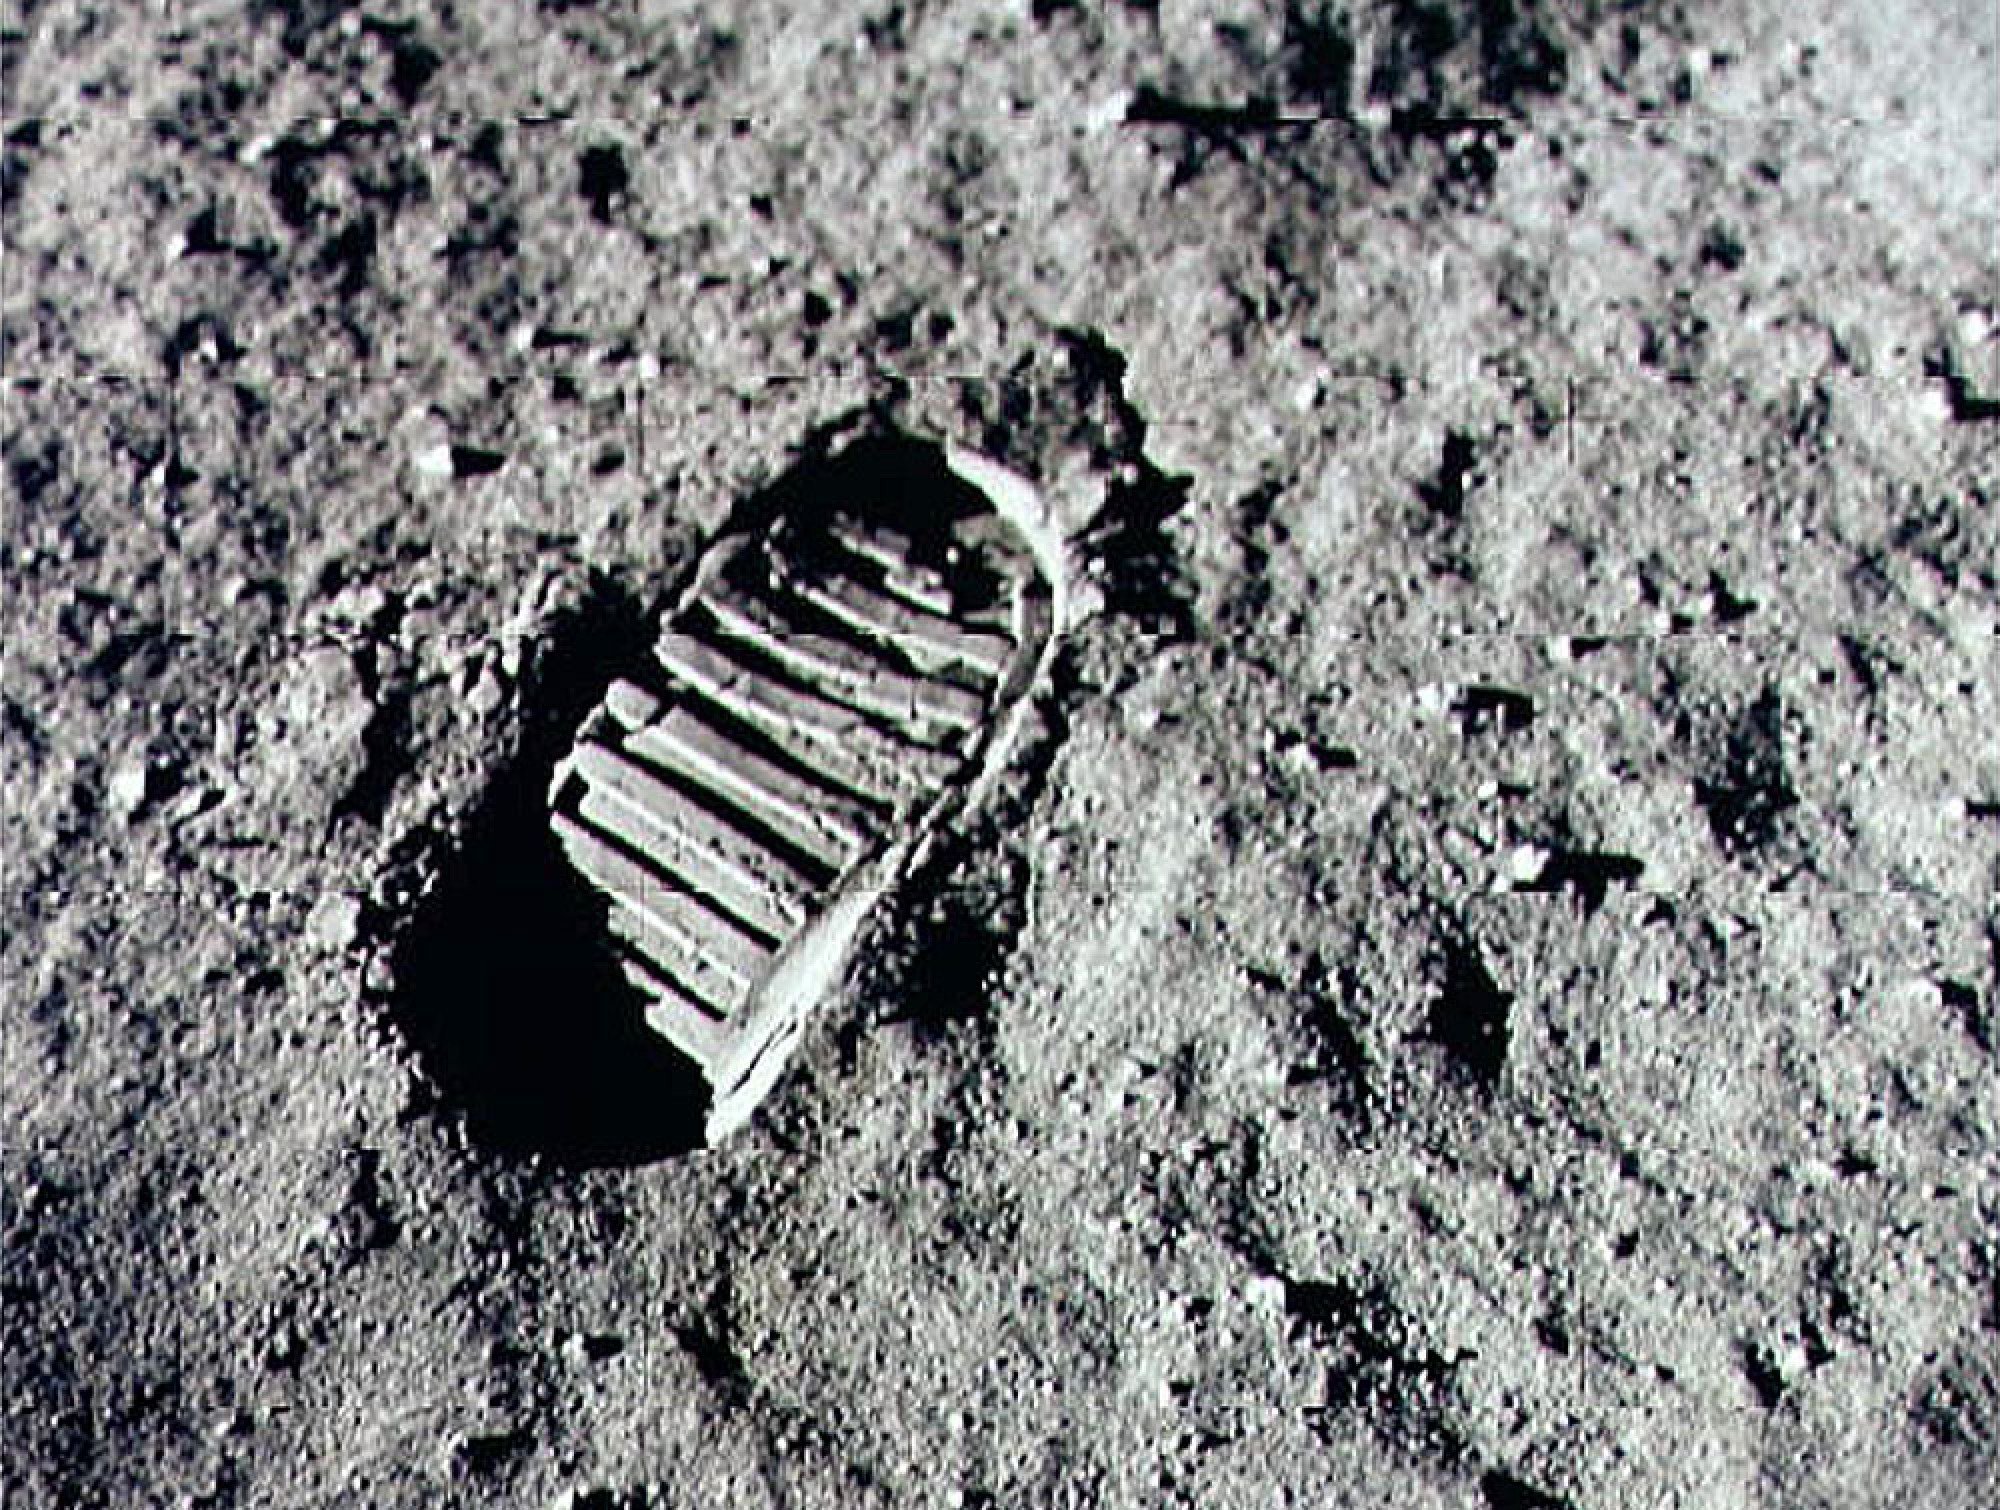 Impression de botte d'astronaute sur la lune